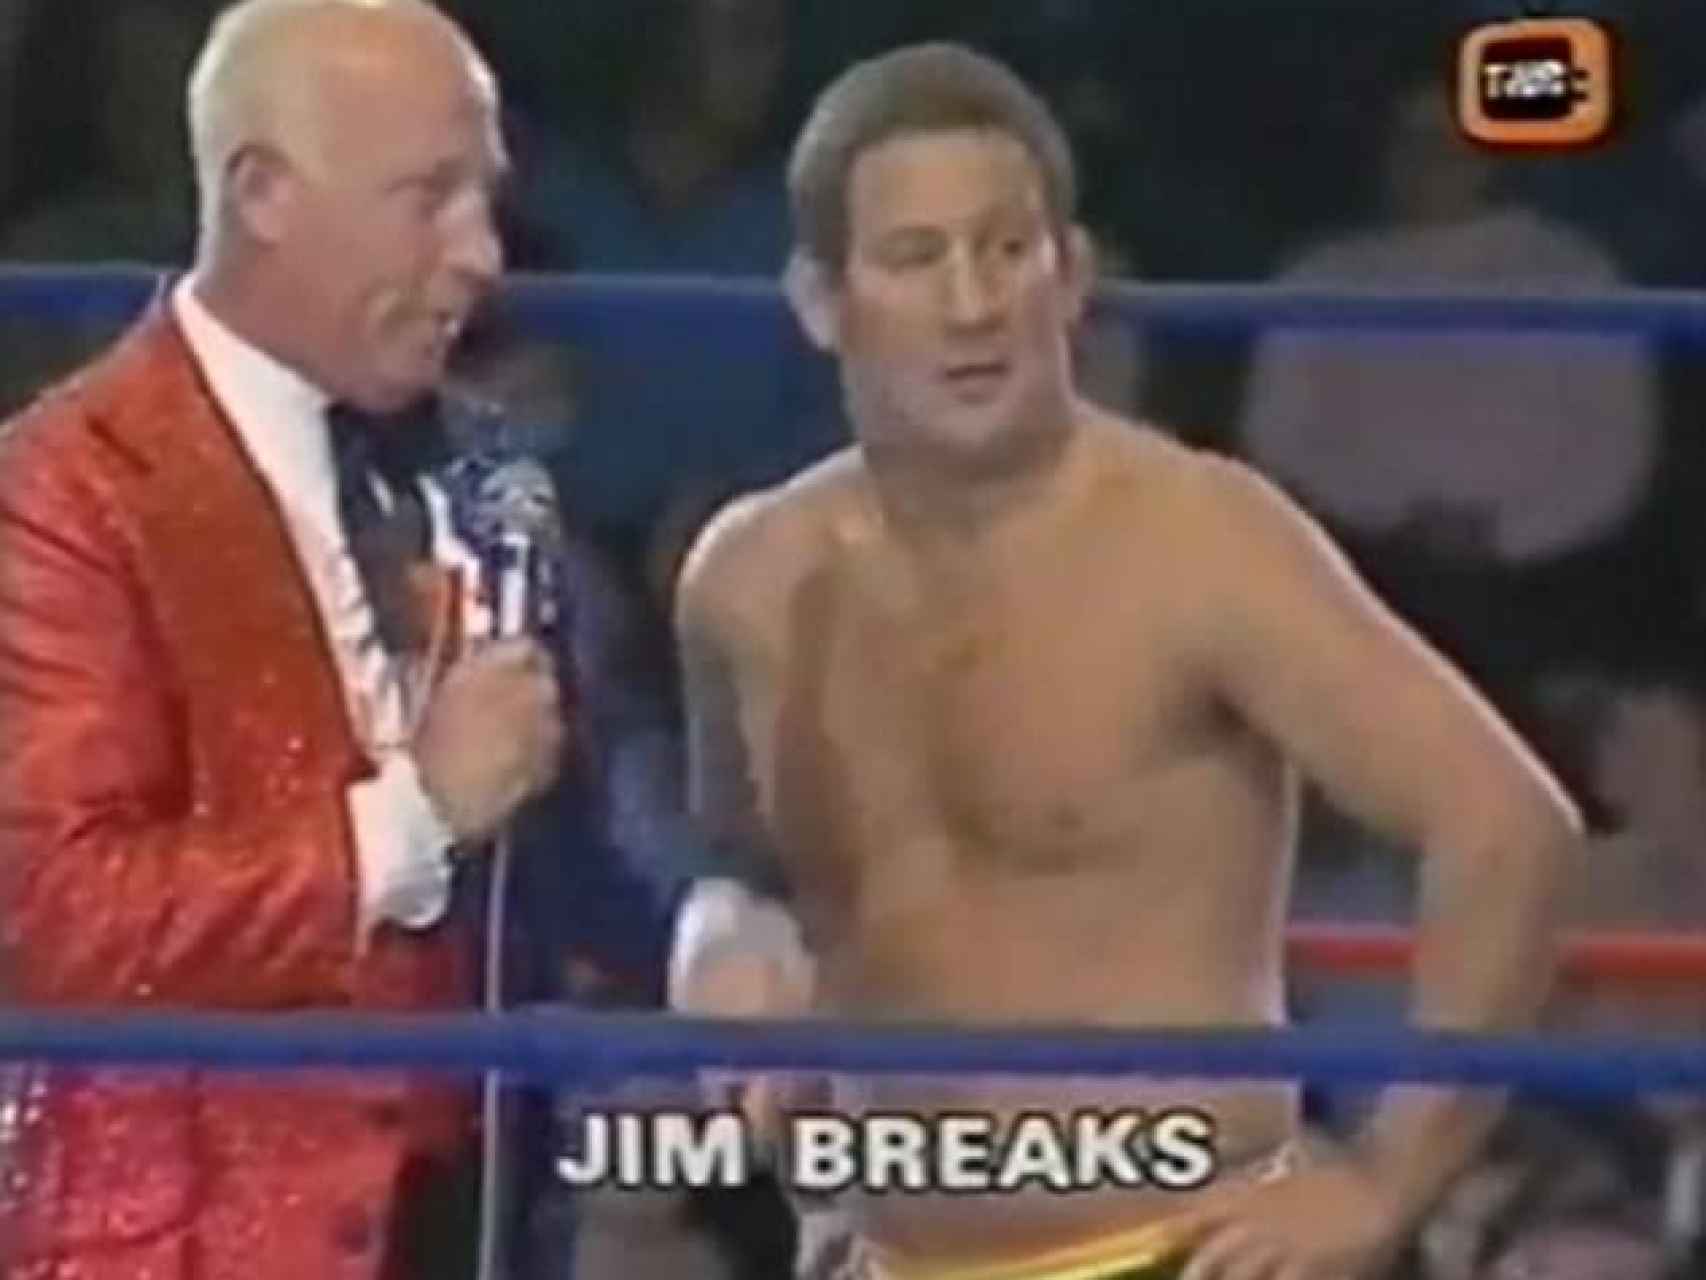 James Breaks, en uno de los combates televisados del British Wrestling.